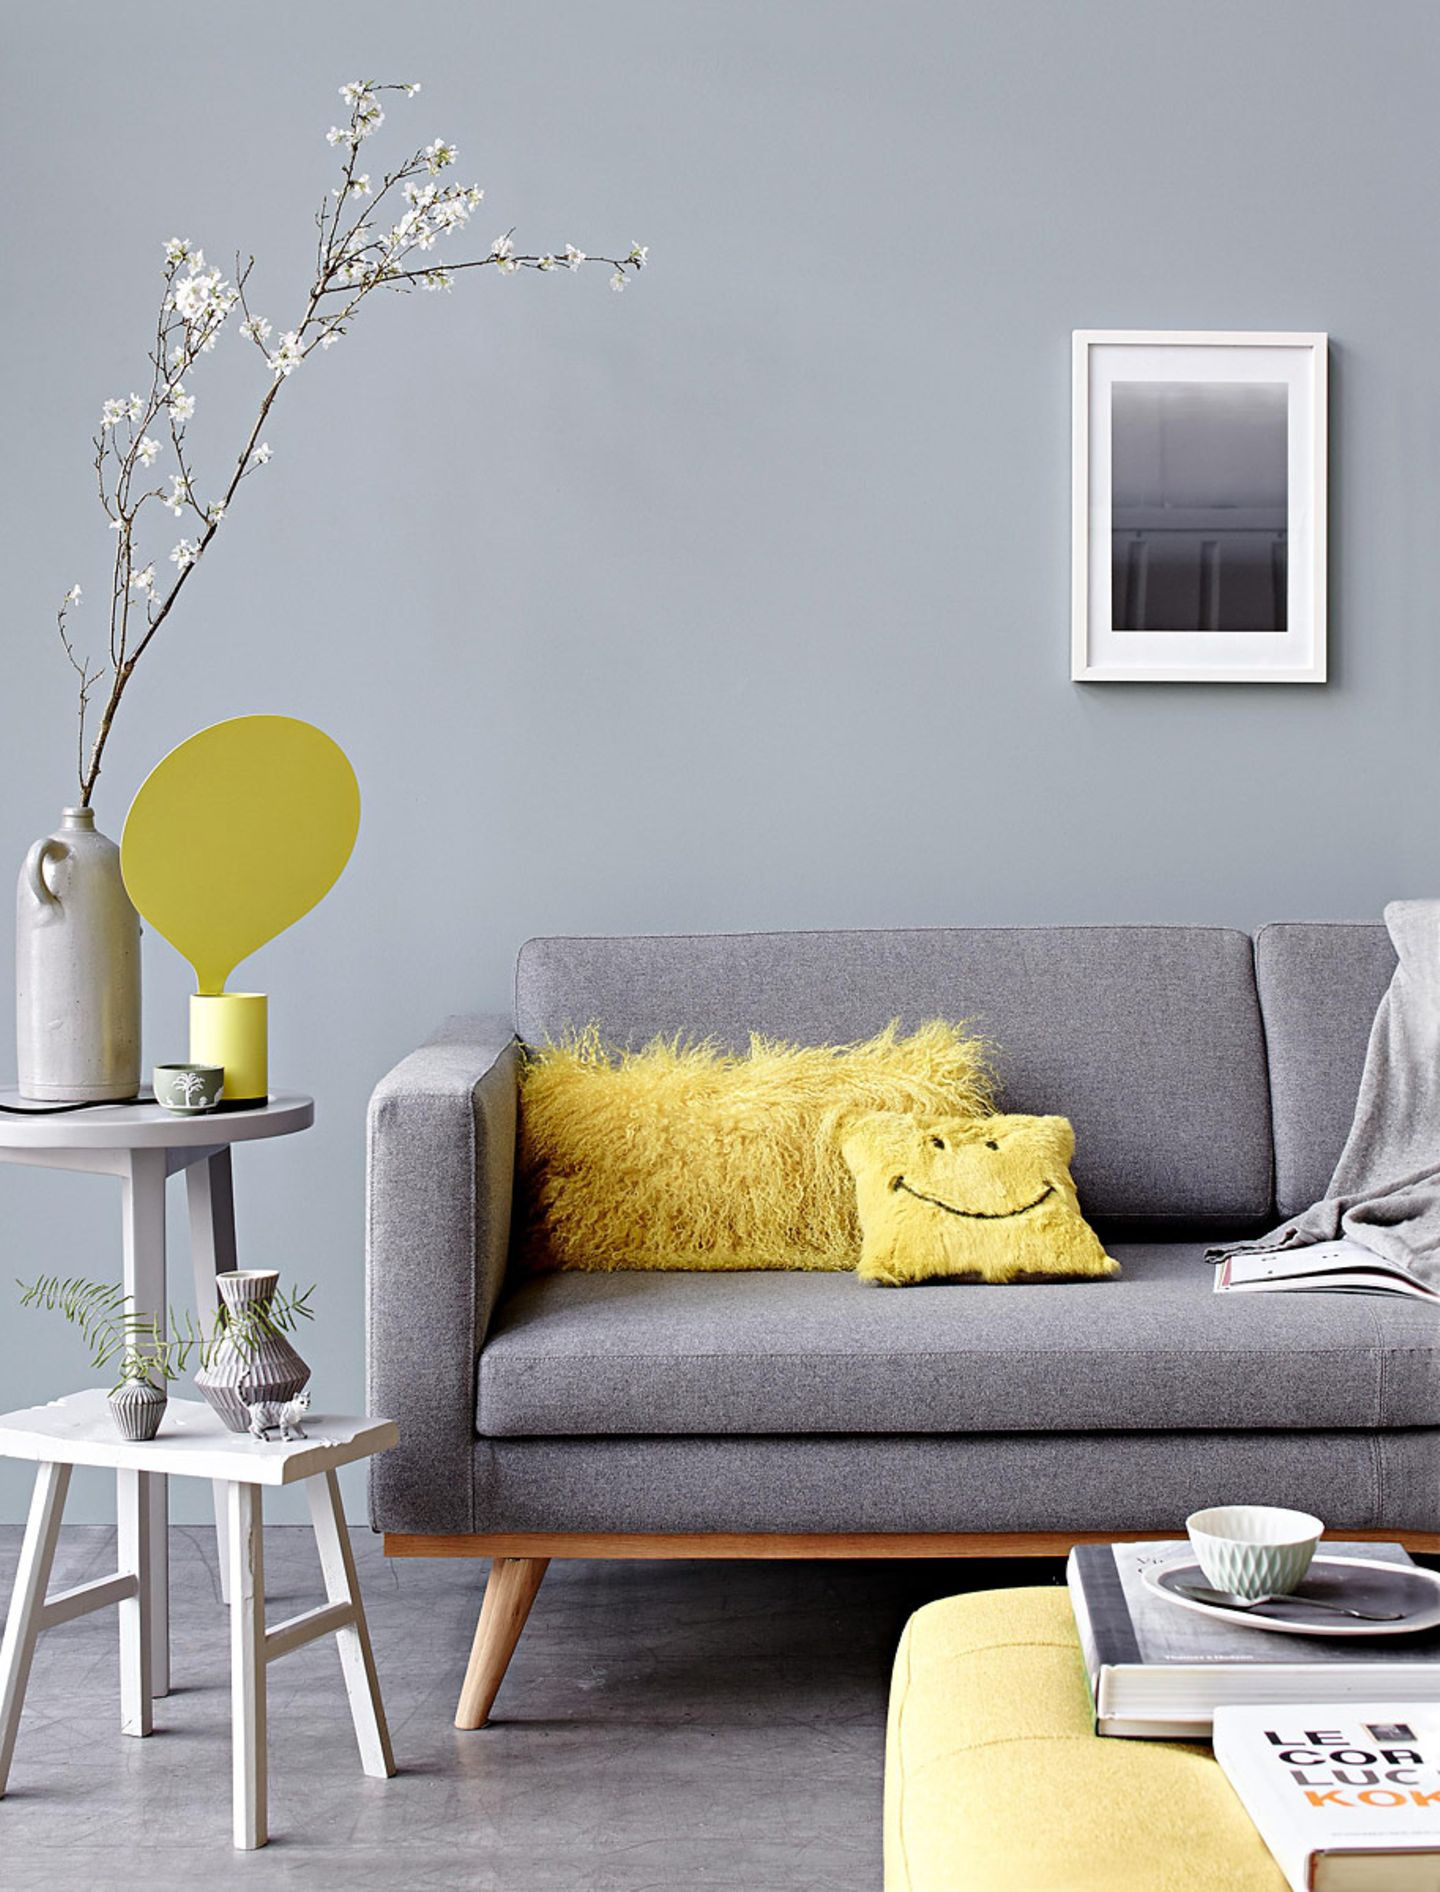 Gelbe Akzente Peppen Die Sitzecke Auf - Bild 3 - [Schöner Wohnen] throughout Wohnzimmer Grau Gelb